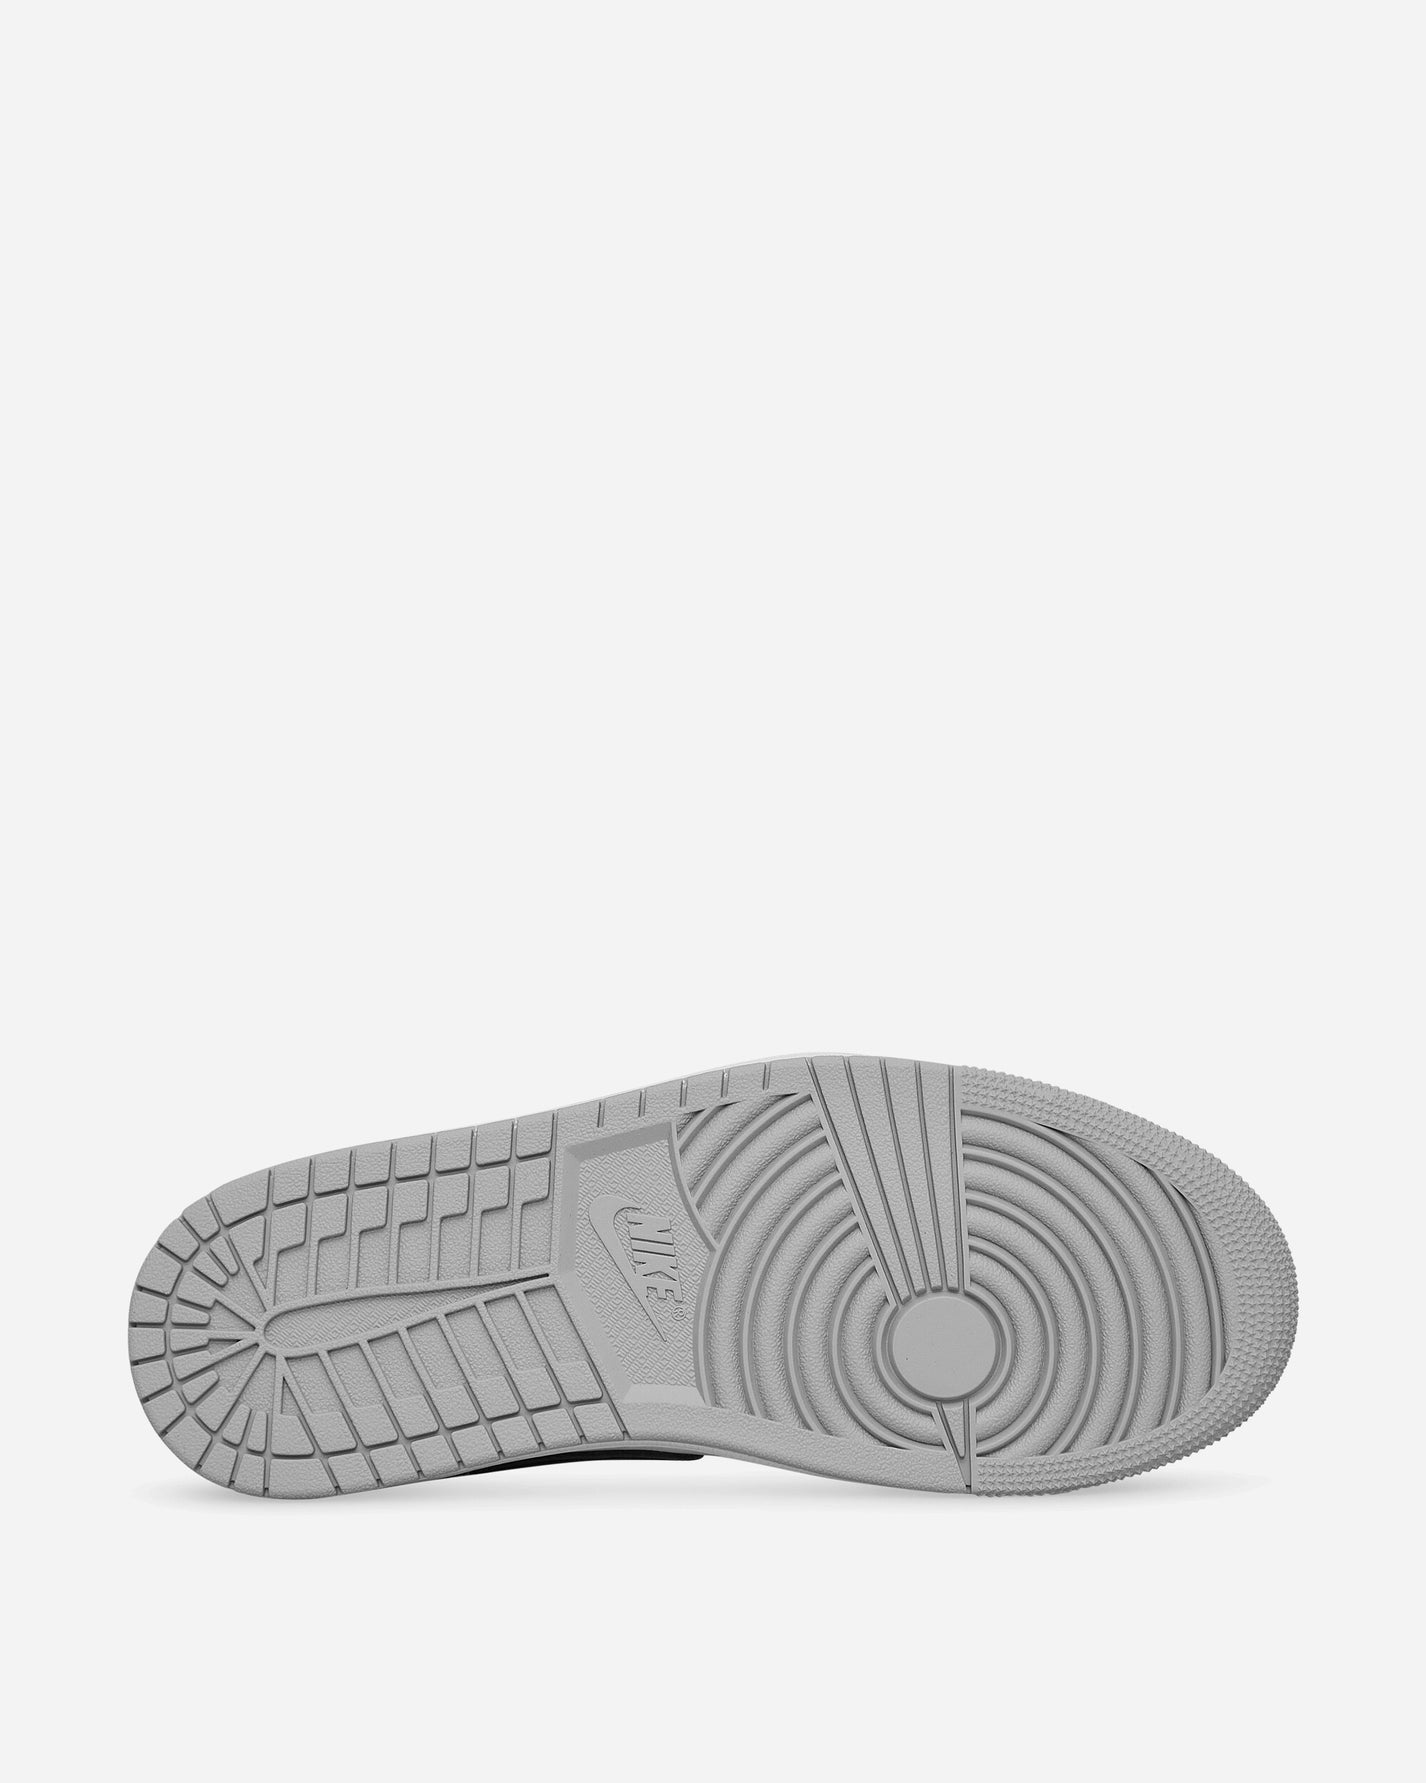 Nike Jordan Air Jordan 1 Retro Low Og White/Black Sneakers Low CZ0790-110